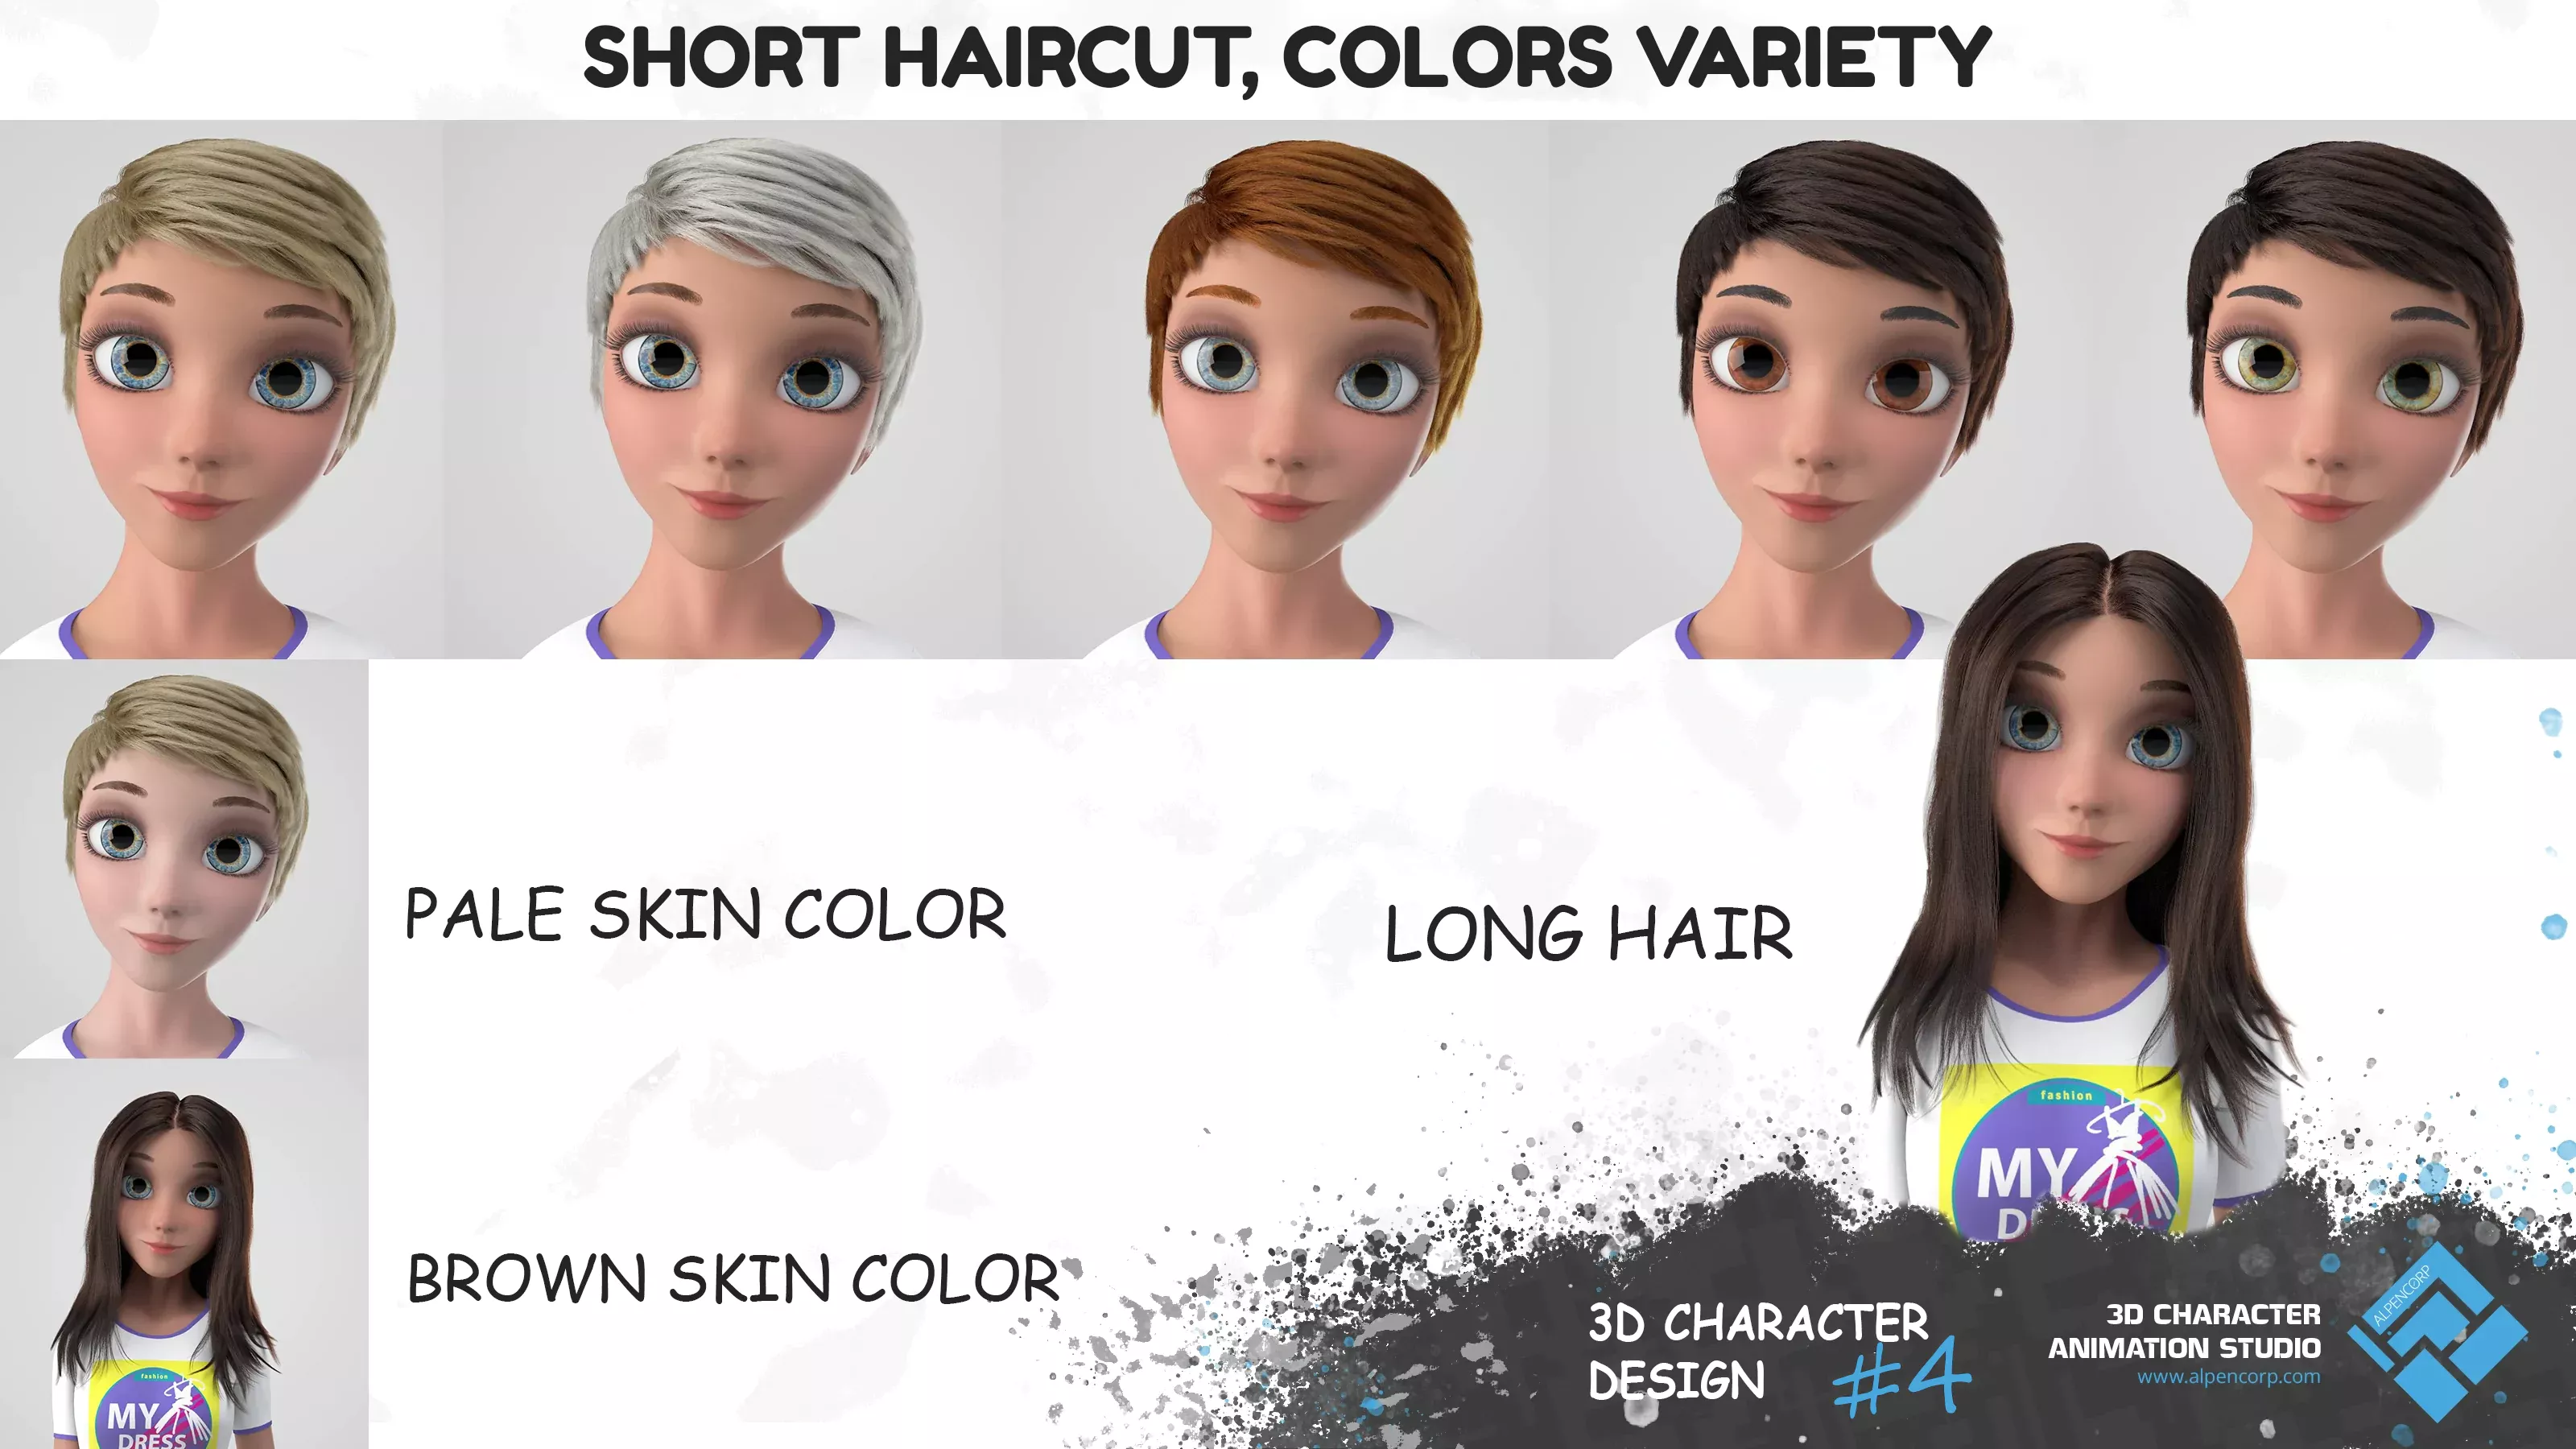 Le personnage 3D pour l'eShop, les coupes de cheveux et ses variations de couleurs.